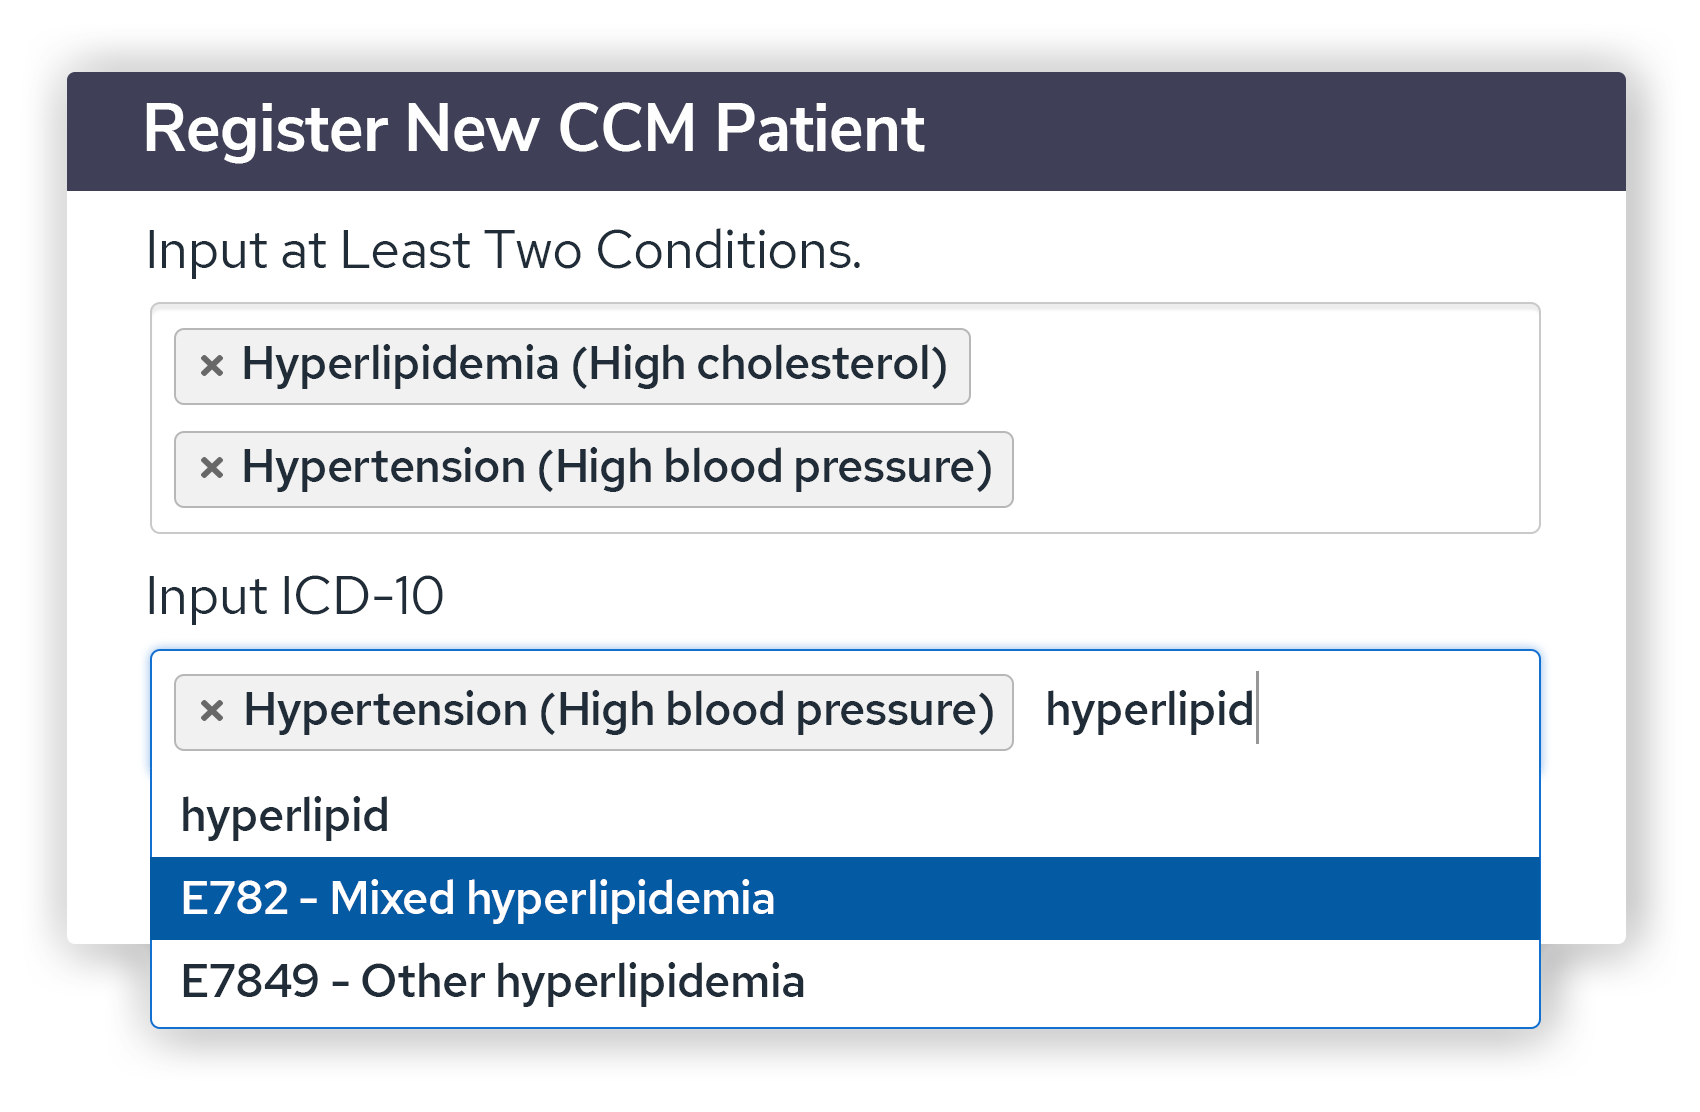 Register CCM Patient UI